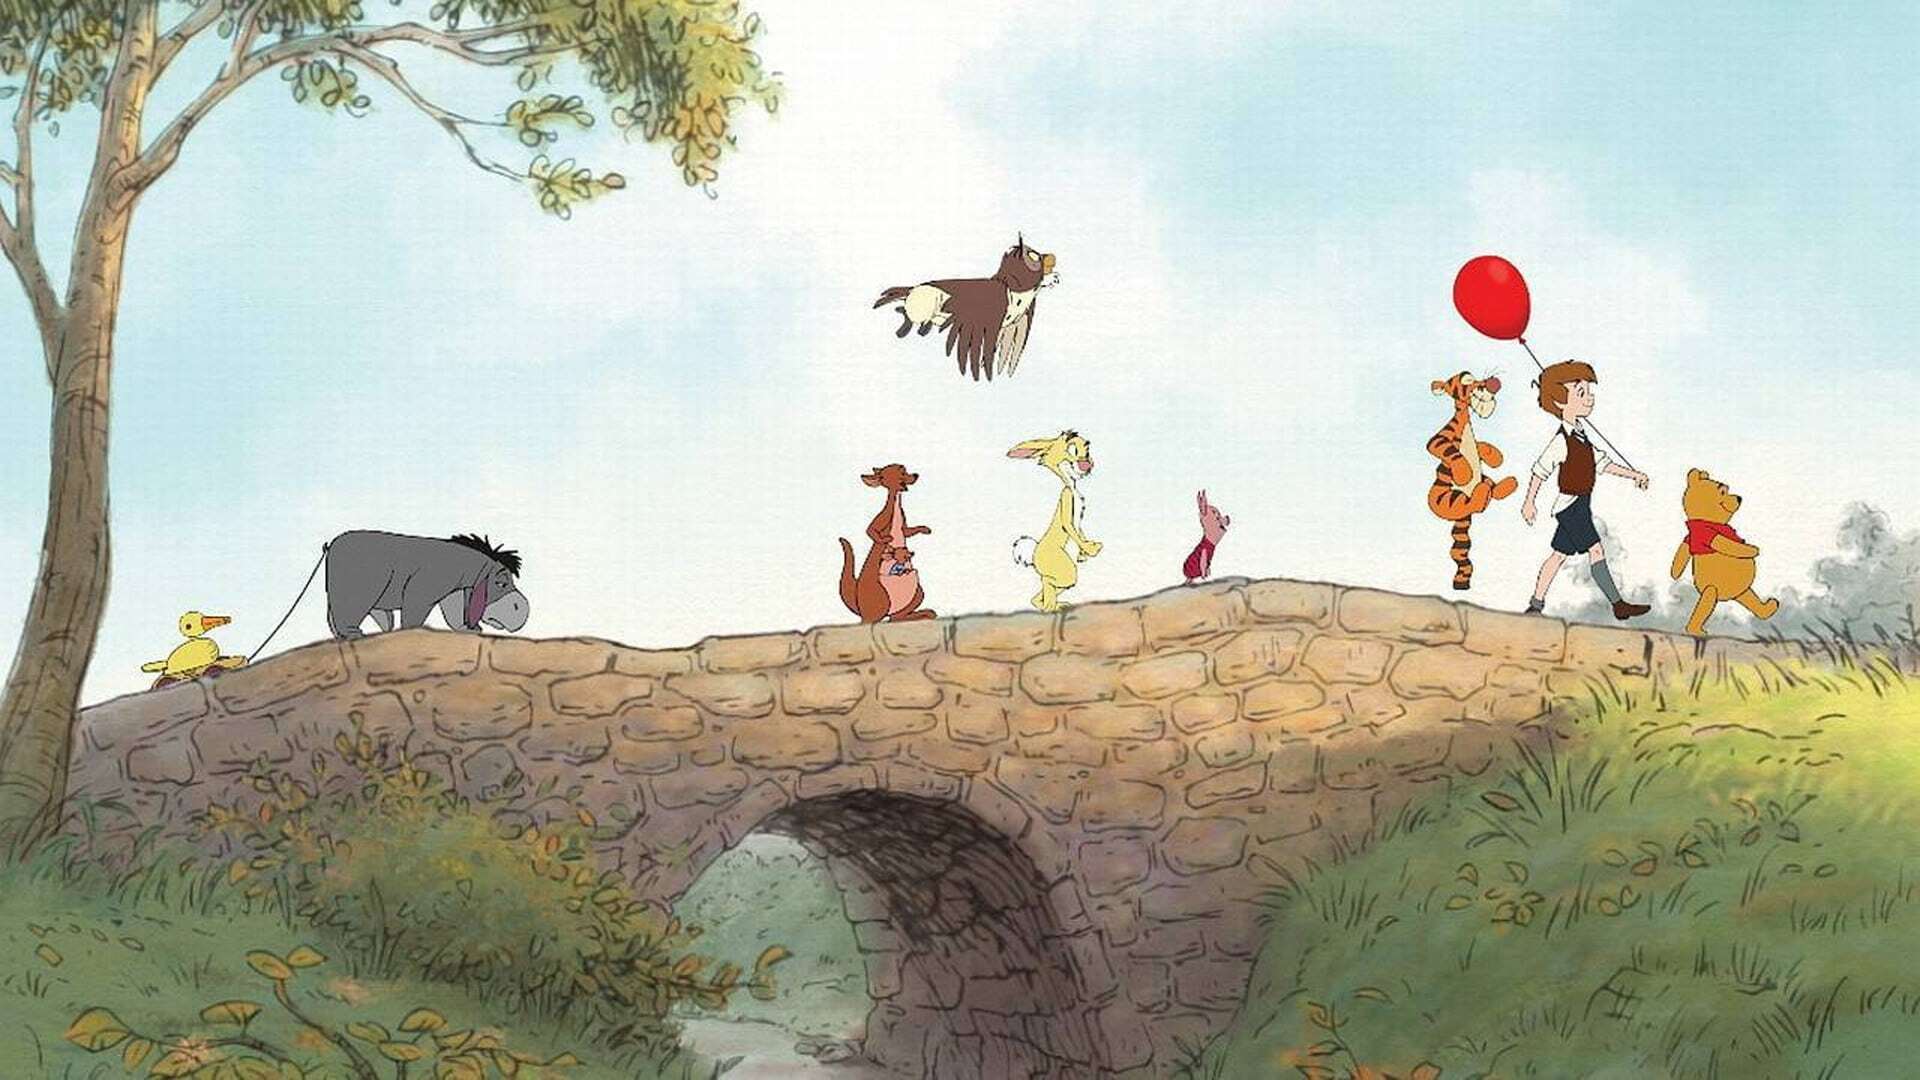 პუჰის დიადი თავგადასავალი: კრისტოფერ რობინის ძიებაში / Pooh's Grand Adventure: The Search for Christopher Robin